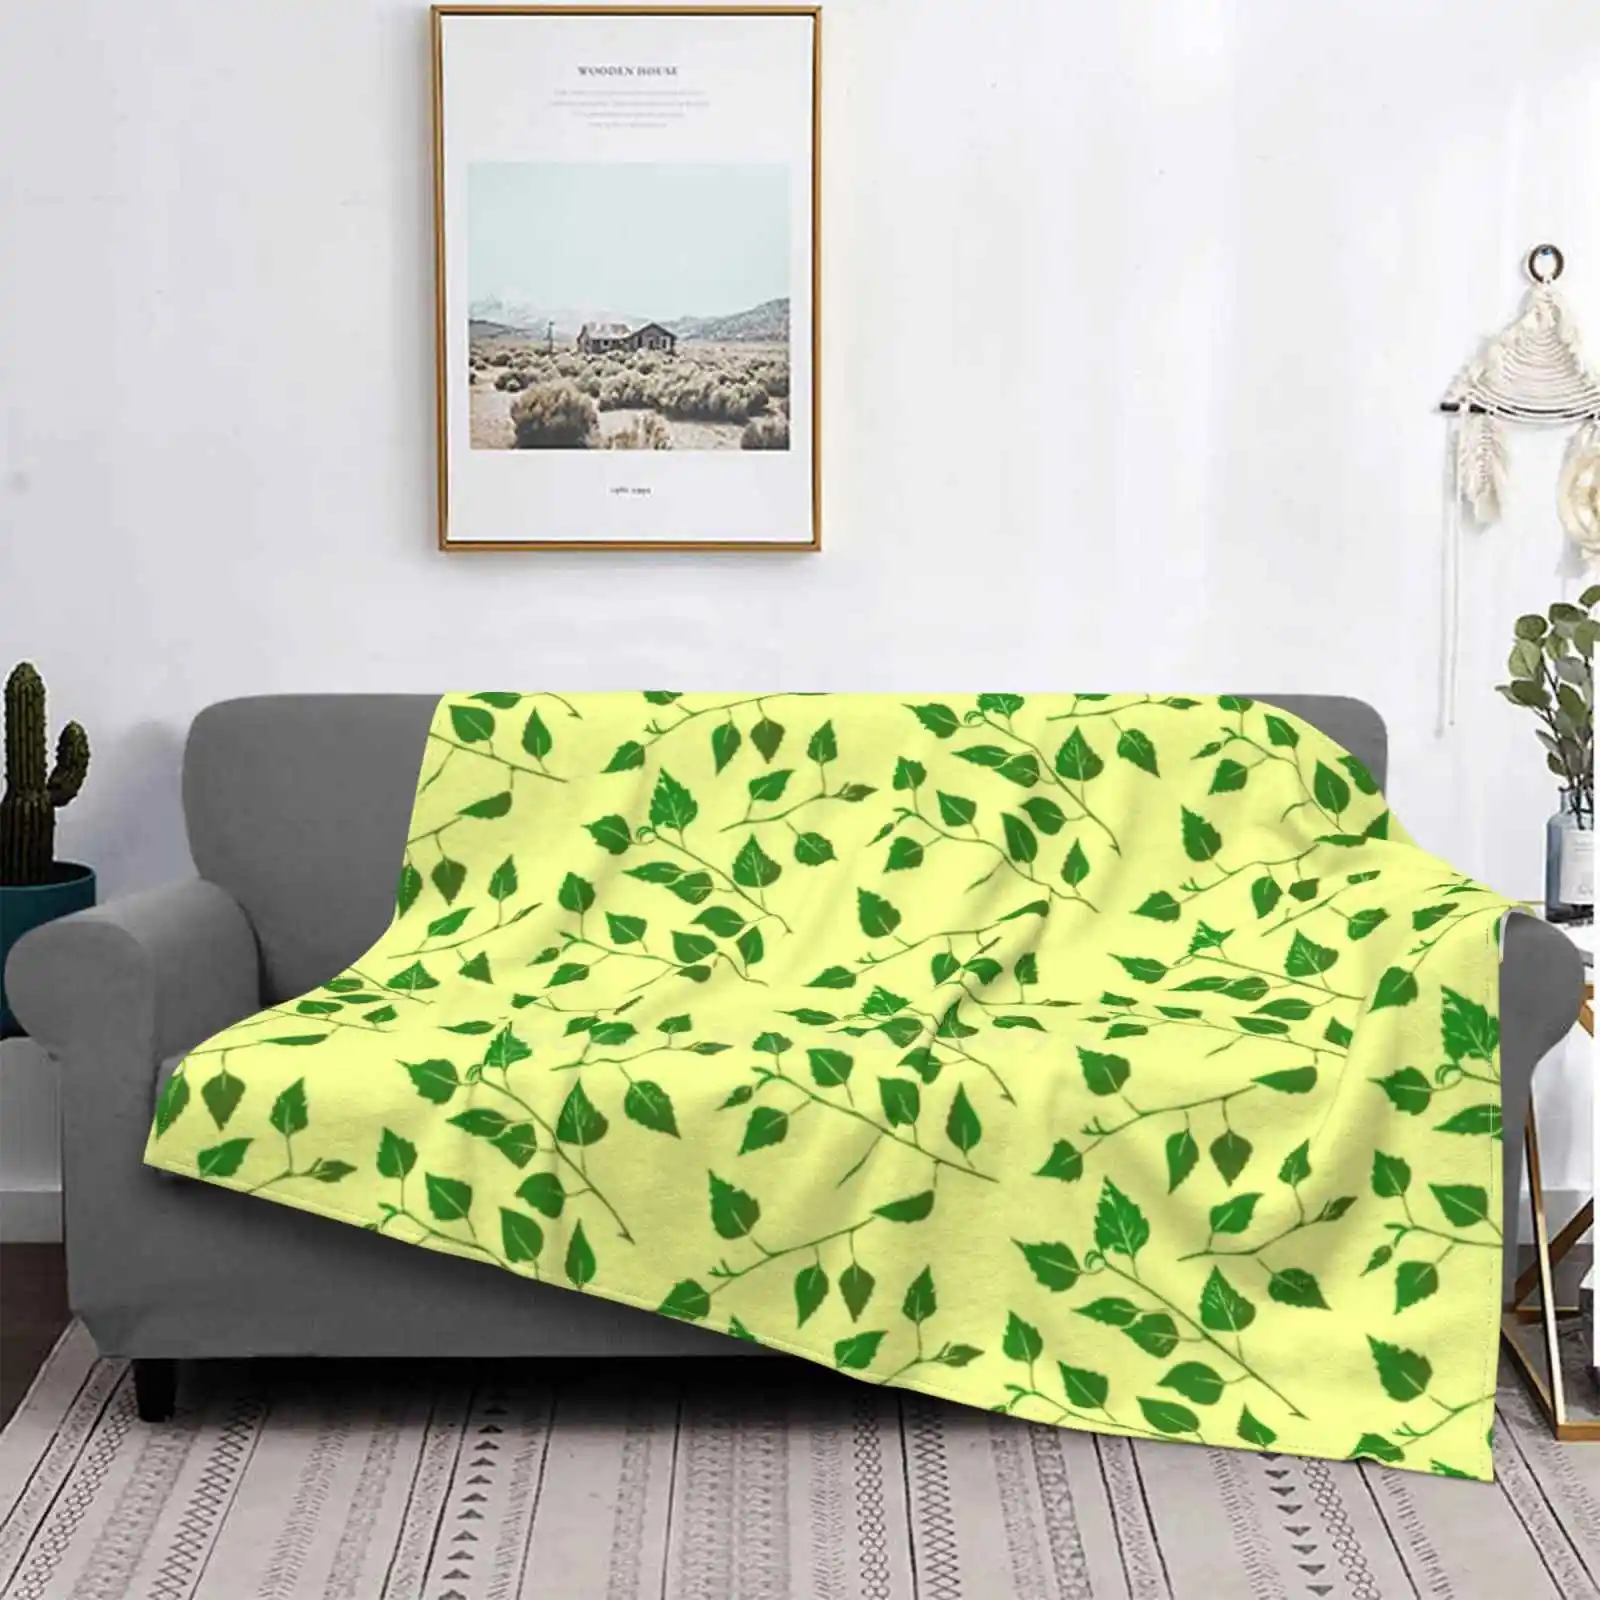 

Удобное теплое мягкое одеяло на четыре сезона с изображением листьев березы и стебля леса (бледно-желтого), березы